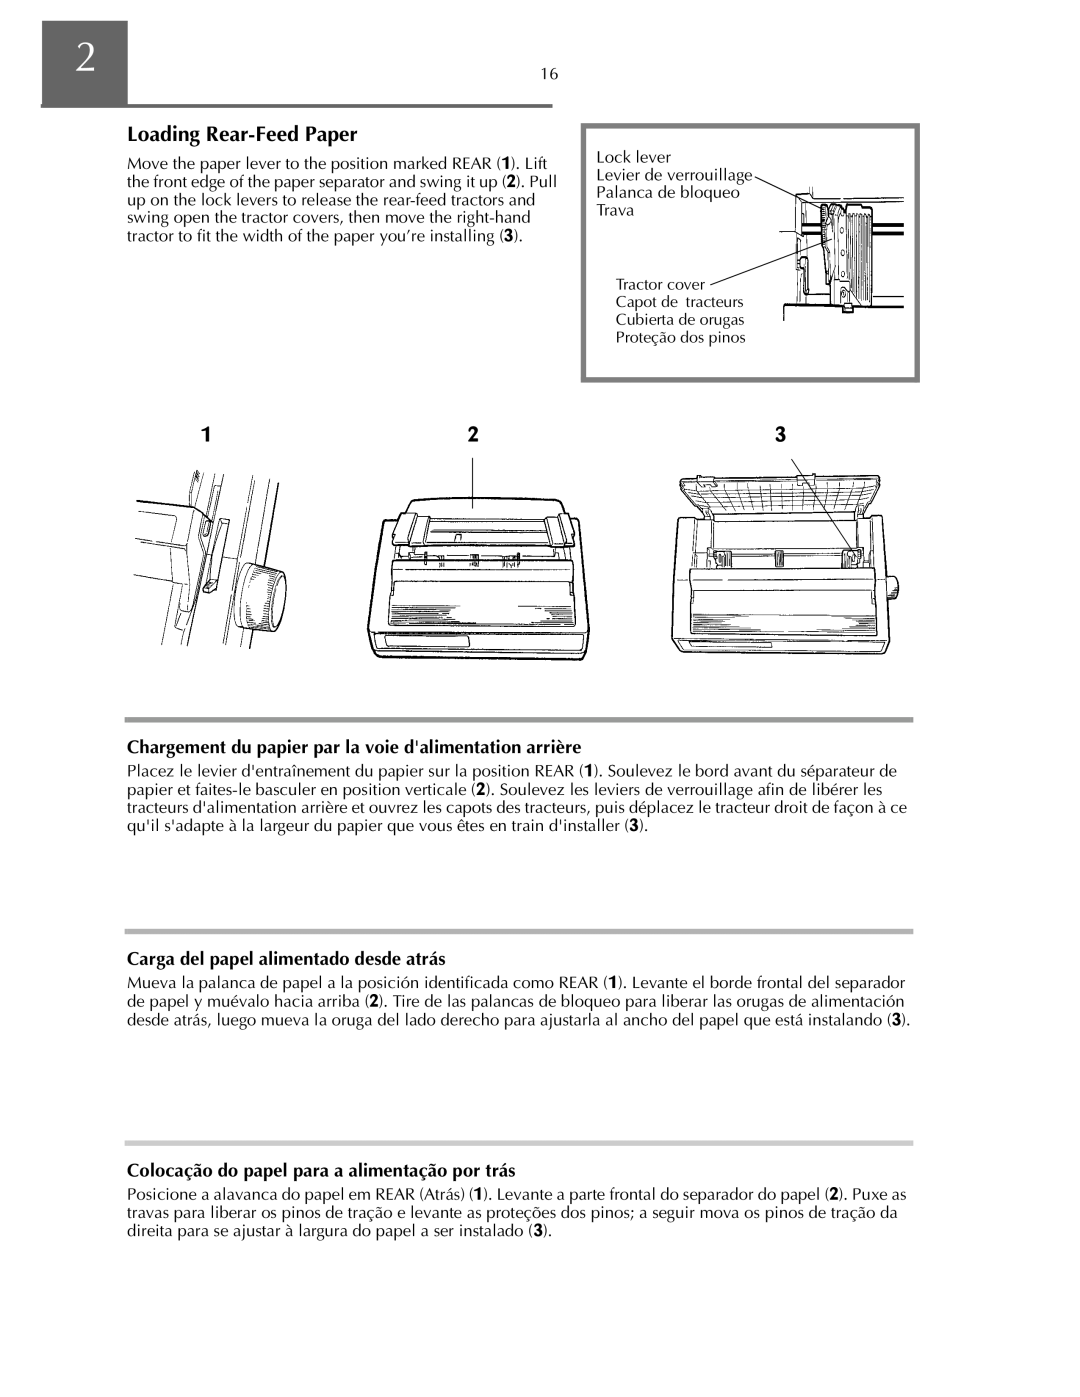 Oki ML590 manual Loading Rear-Feed Paper, Chargement du papier par la voie dalimentation arrière 